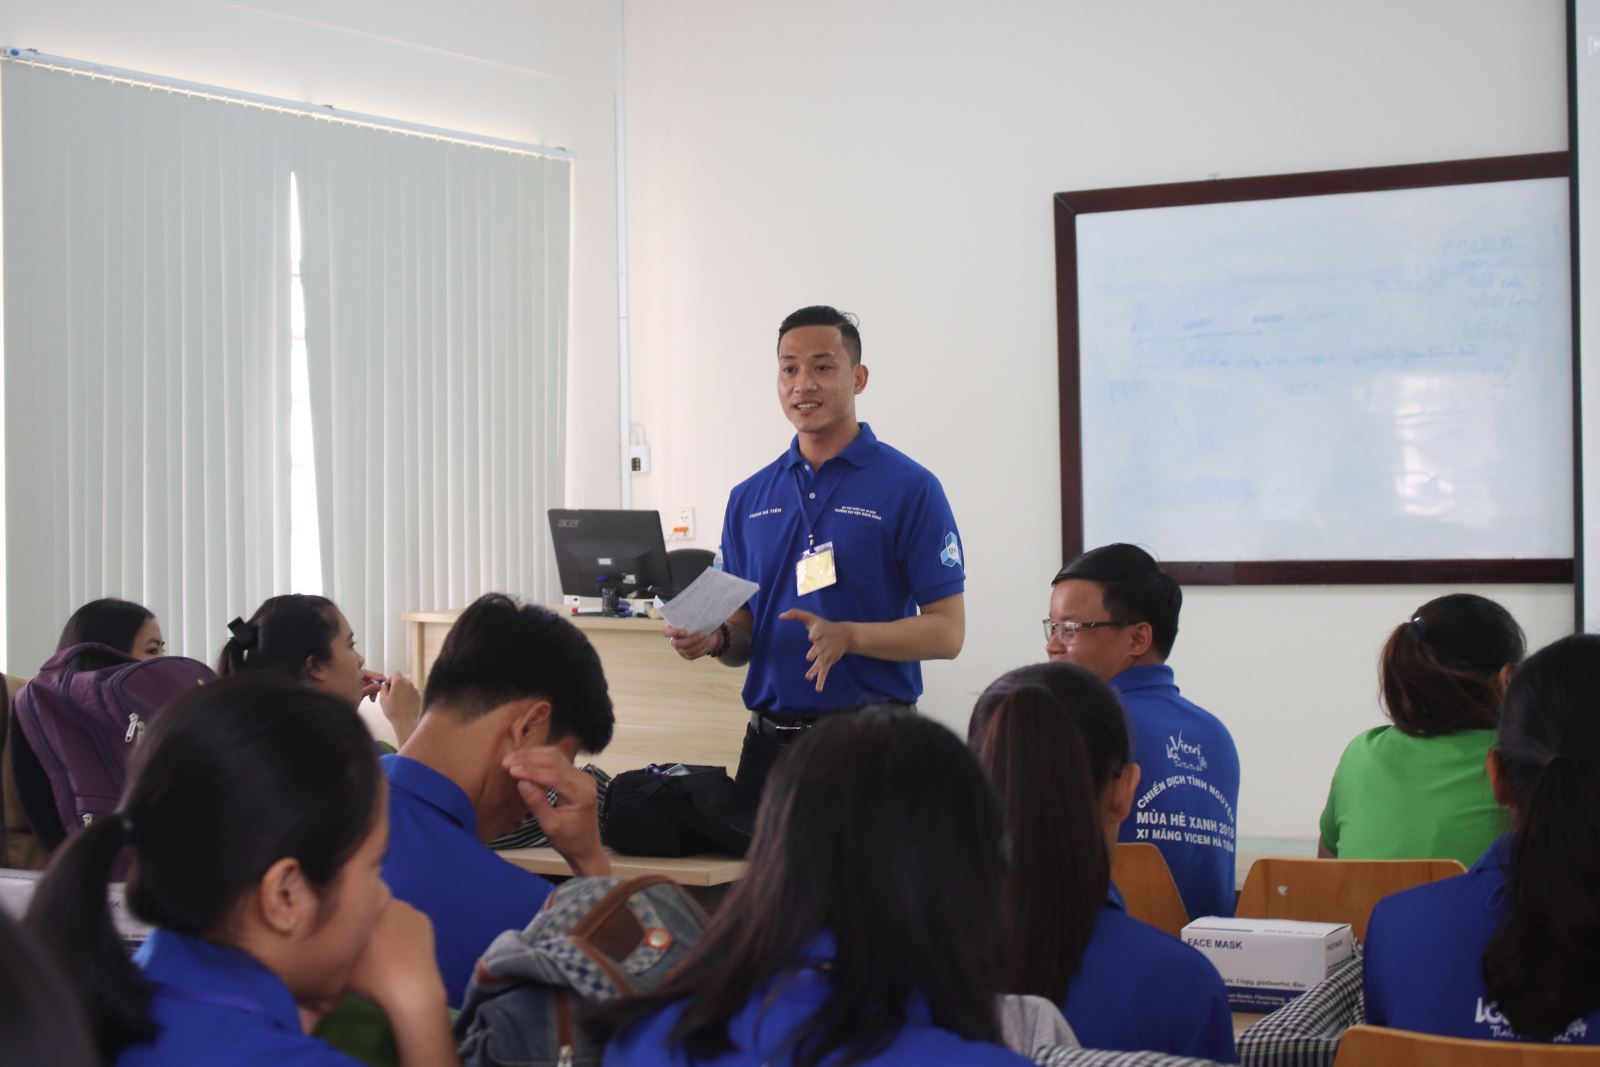 Sinh viên Phân hiệu ĐHQG-HCM tại tỉnh Bến Tre ra quân Chiến dịch tình nguyện Mùa hè xanh năm 2018